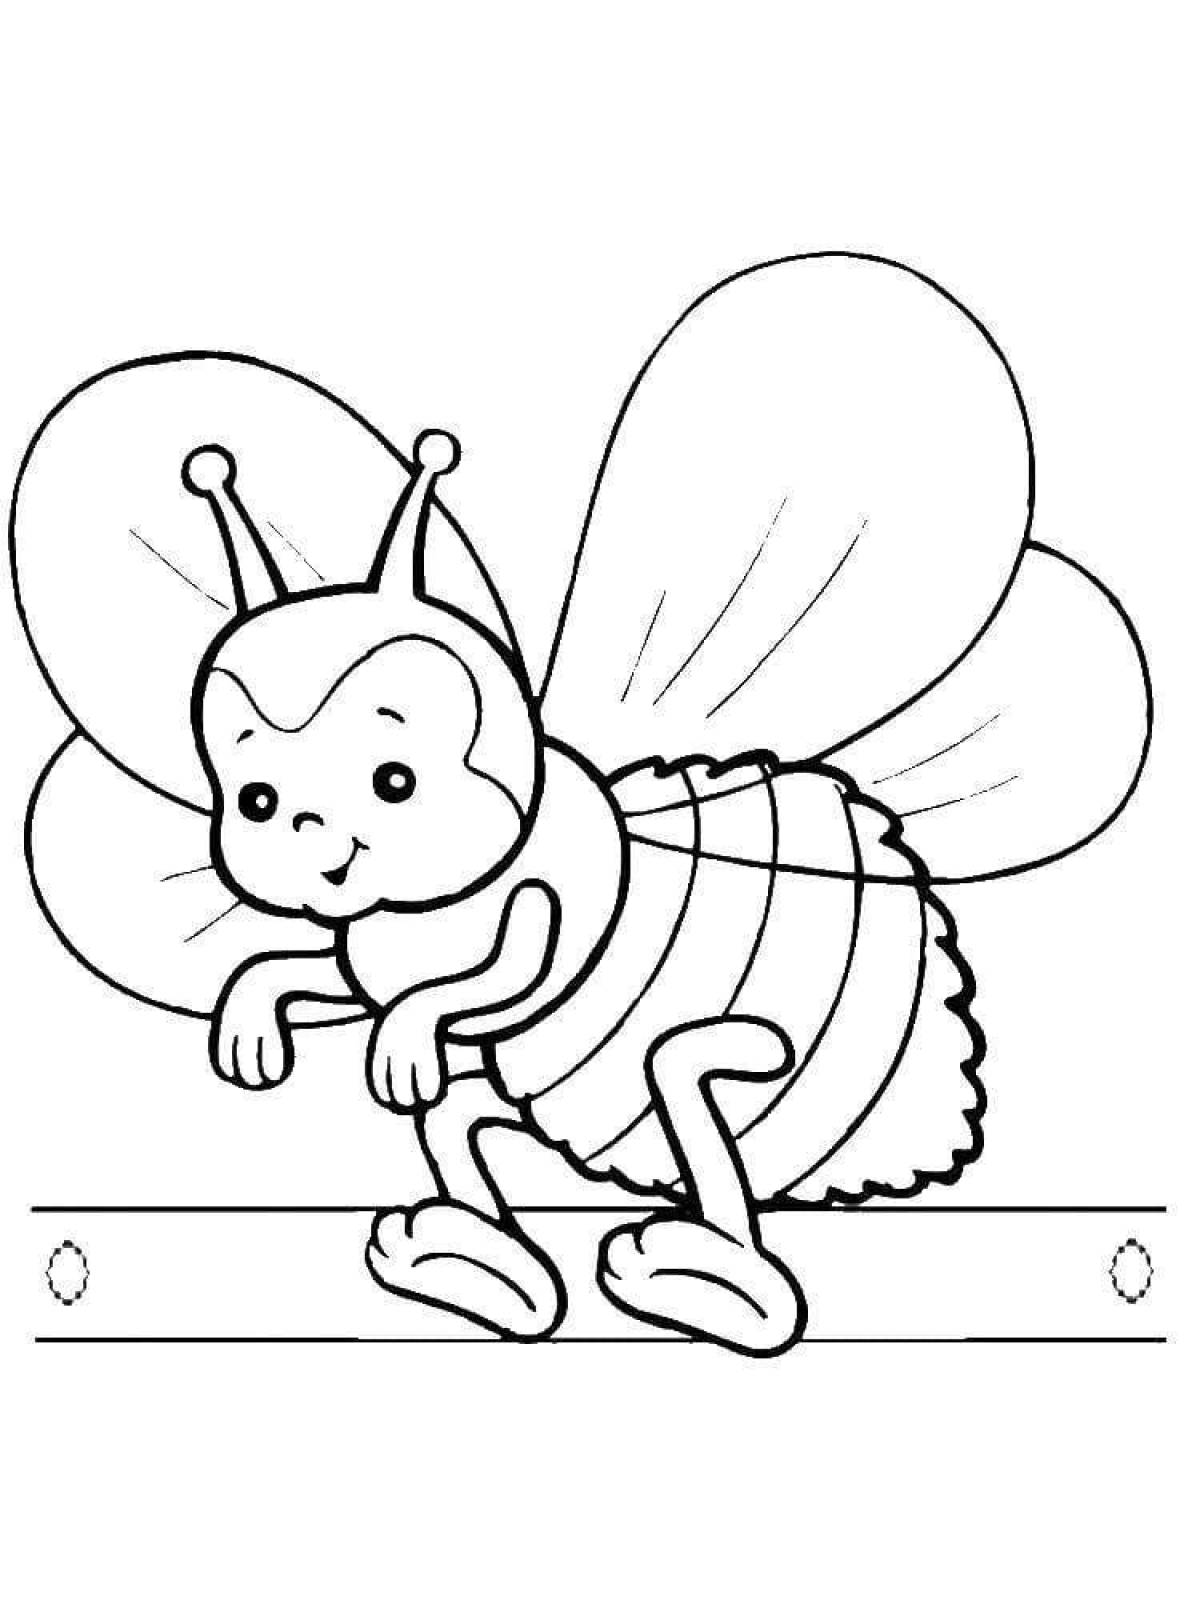 Раскраска насекомое ребенку 4 года. Насекомые. Раскраска. Раскраска пчёлка для детей. Насекомые раскраска для детей. Пчела раскраска.